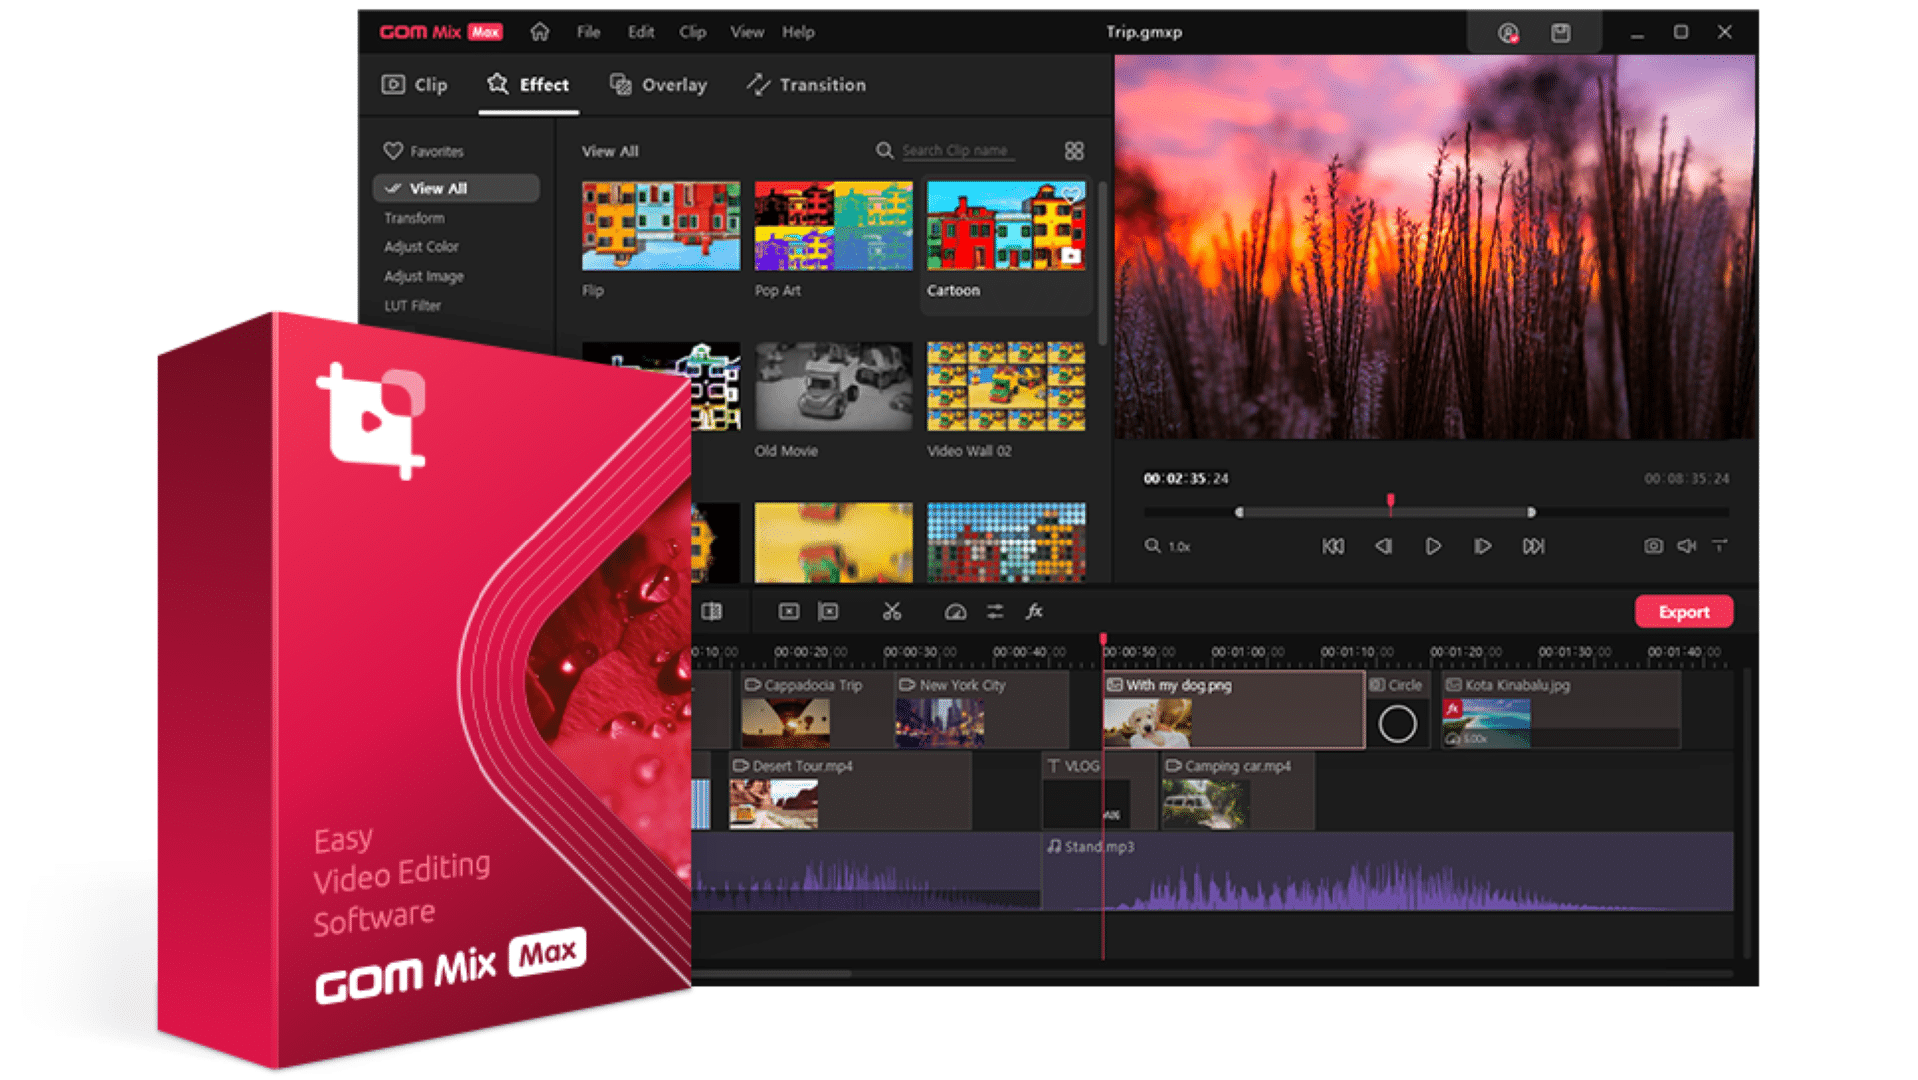 GOM Mix Max es una excelente alternativa al costoso software de edición de video